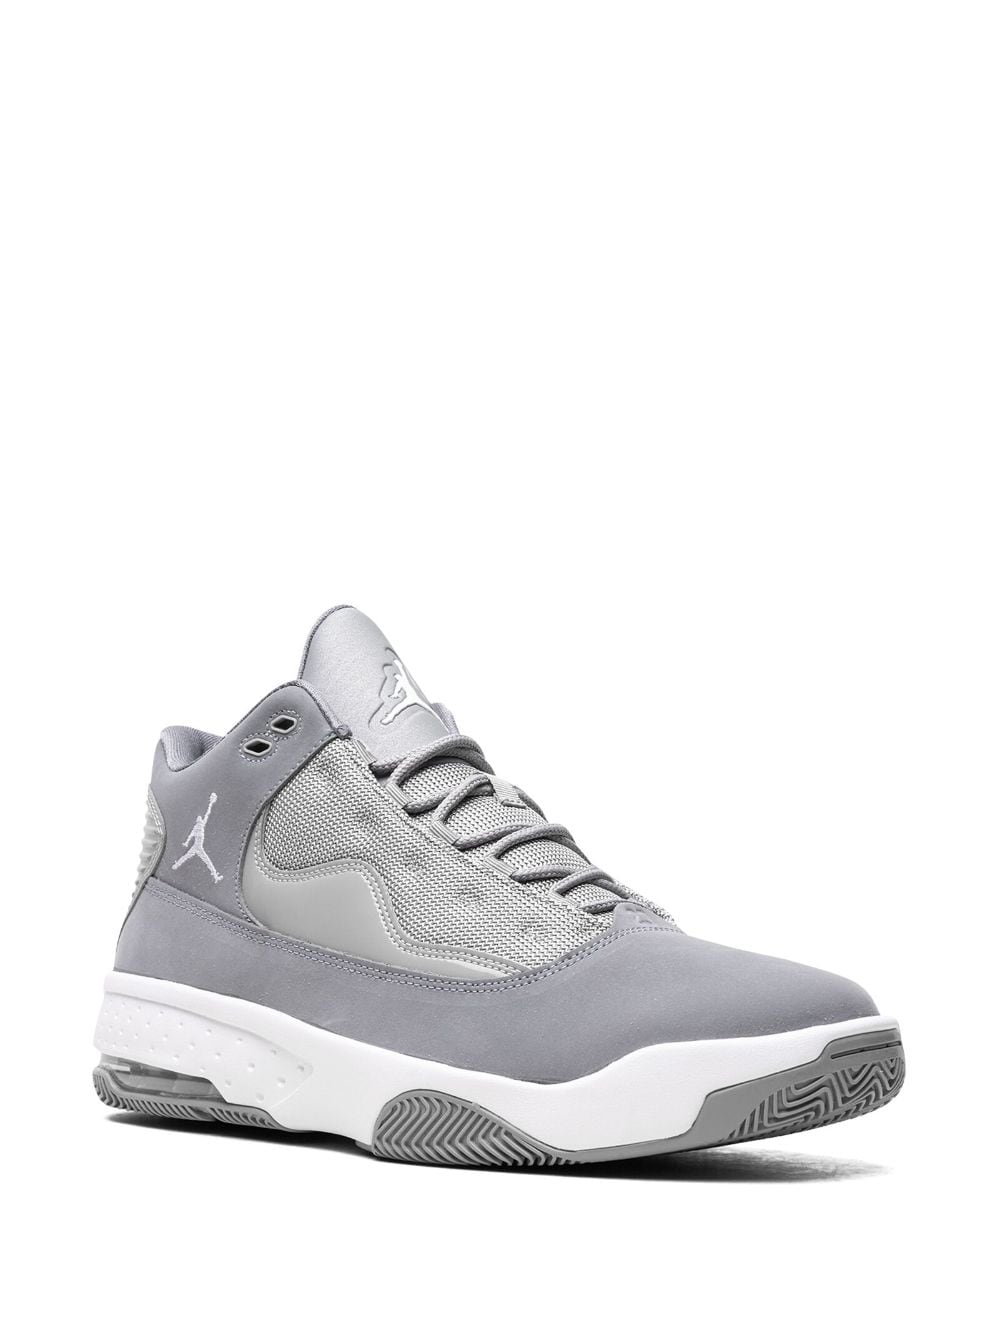 Image 2 of Jordan "Max Aura 2 ""Cool Grey"" sneakers"